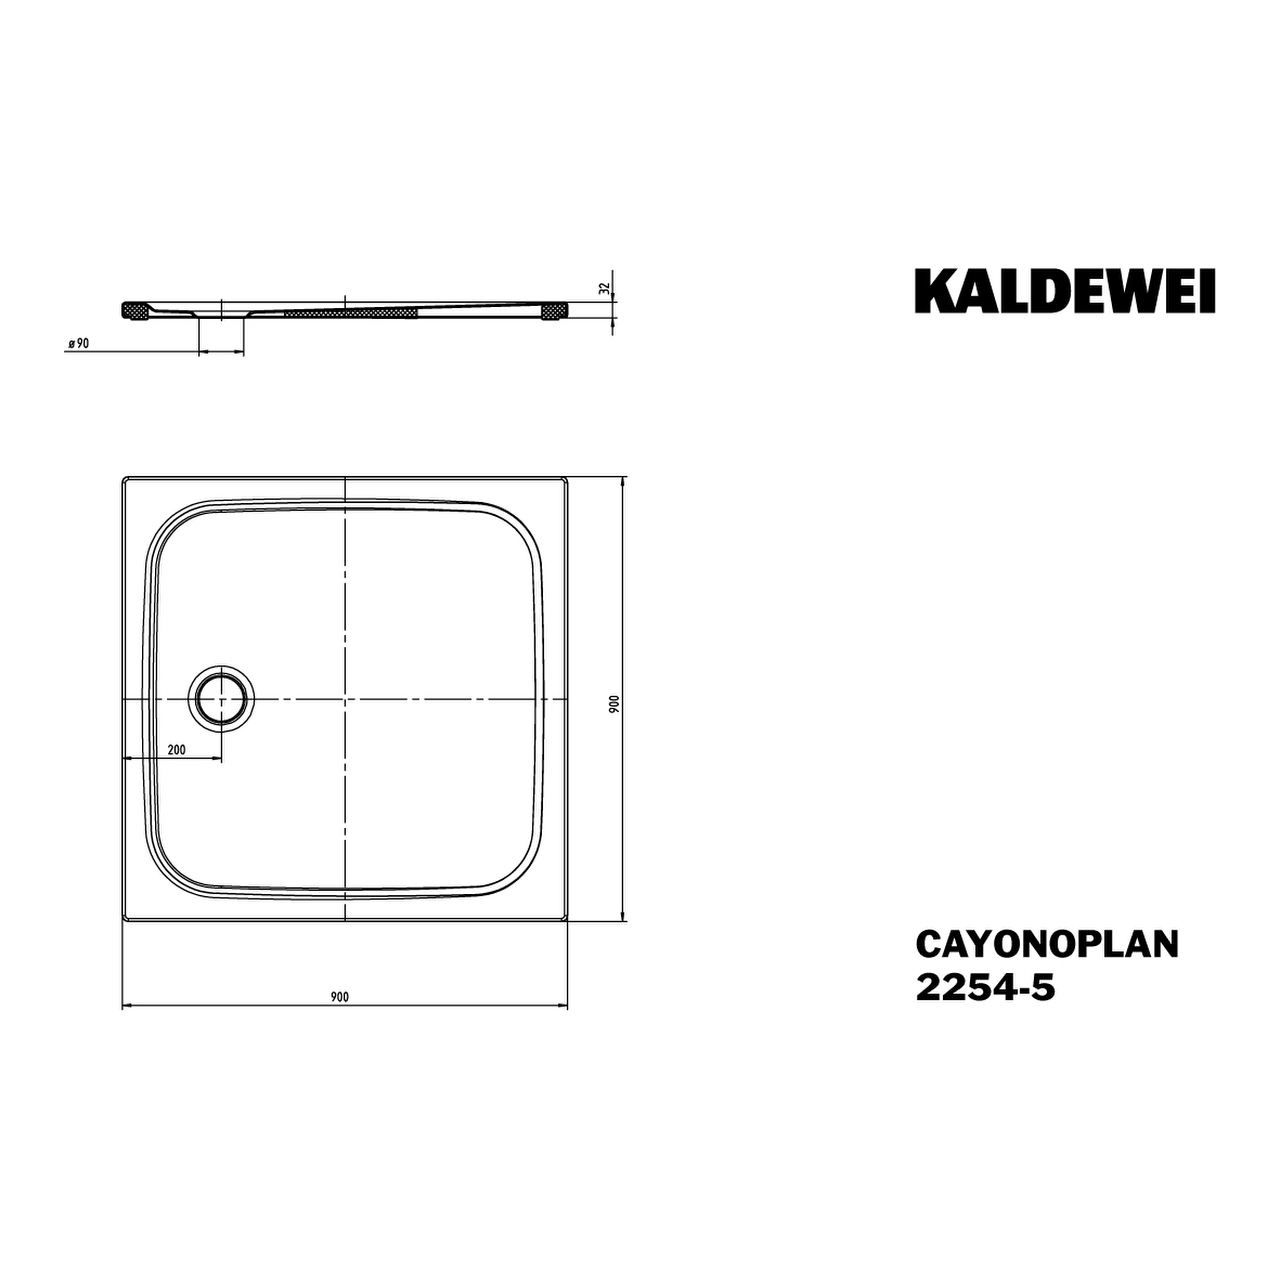 Kaldewei quadrat Duschwanne „Cayonoplan“ 90 × 90 cm in warm grey 70